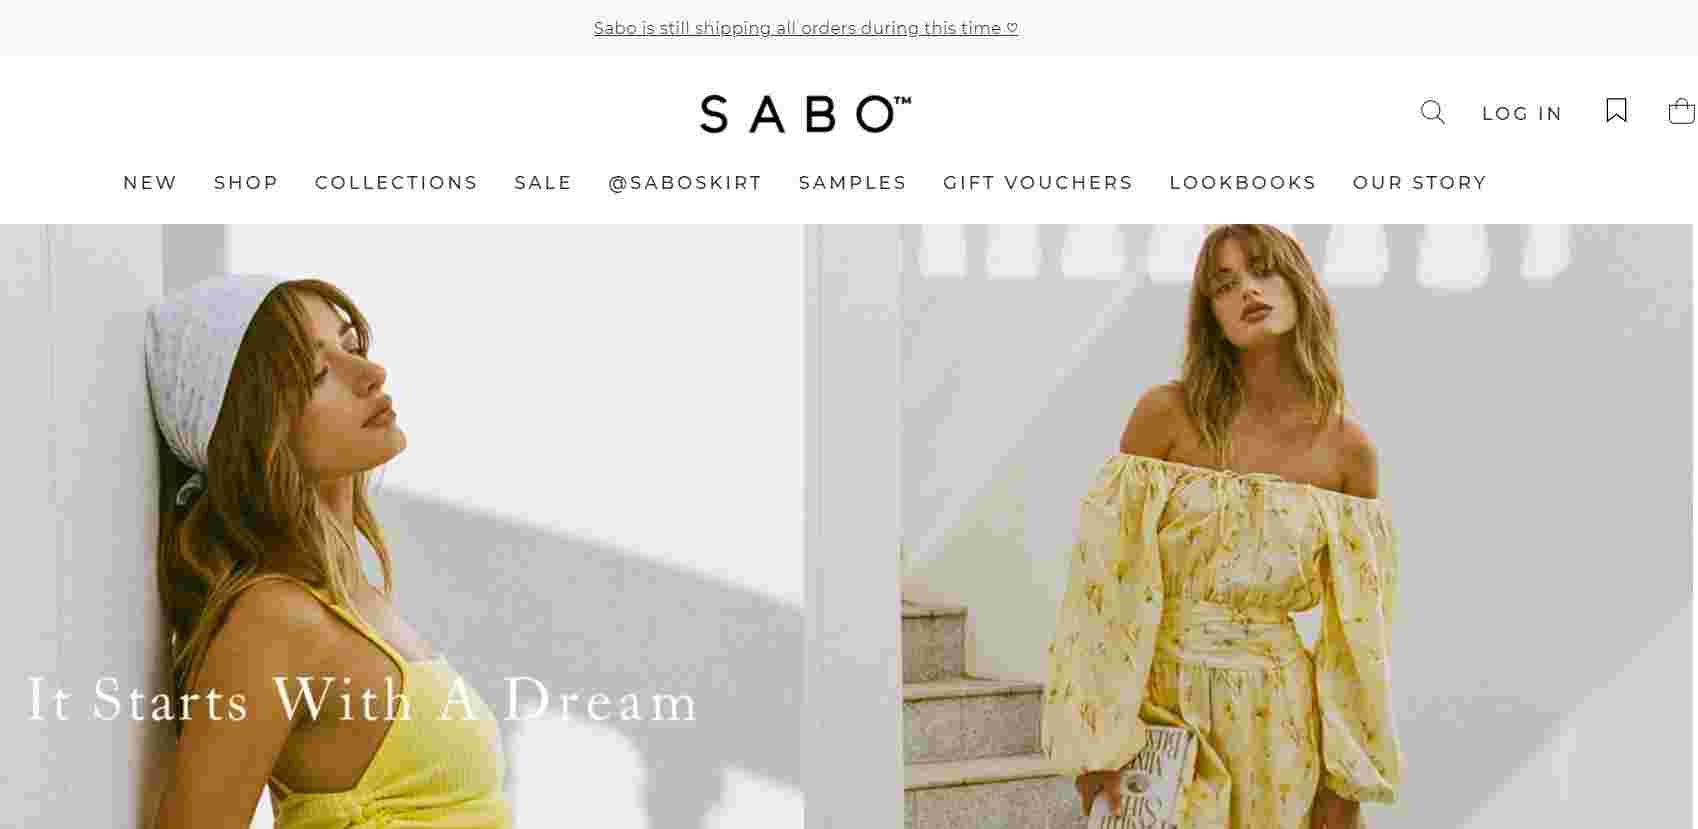 Sabo Skirt